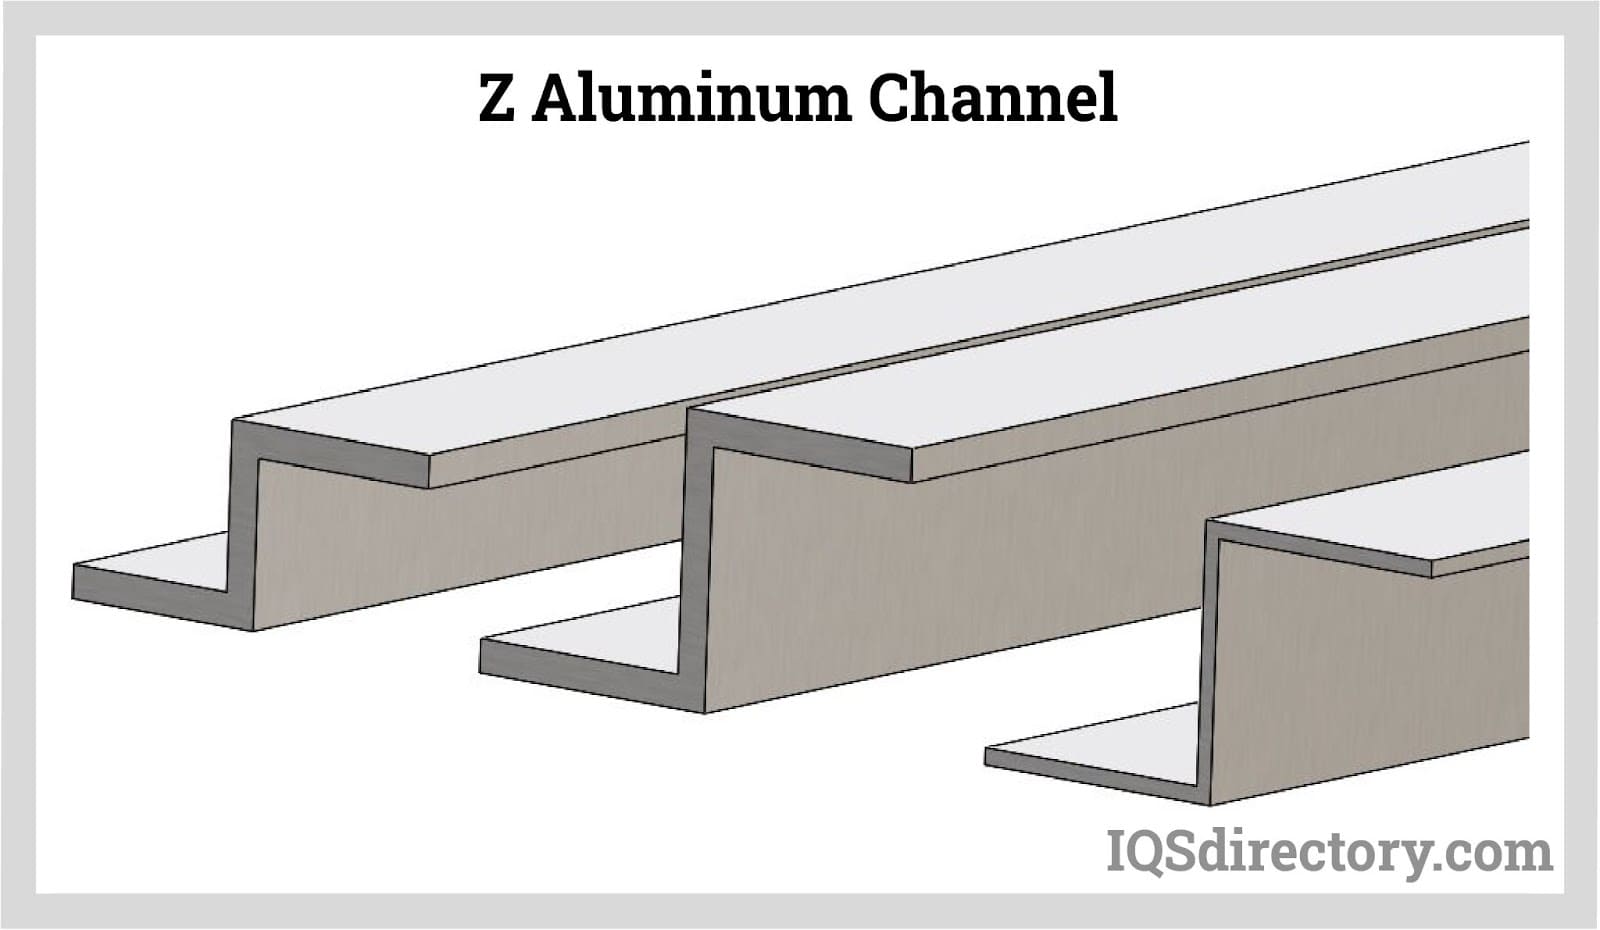 Z Aluminum Channel